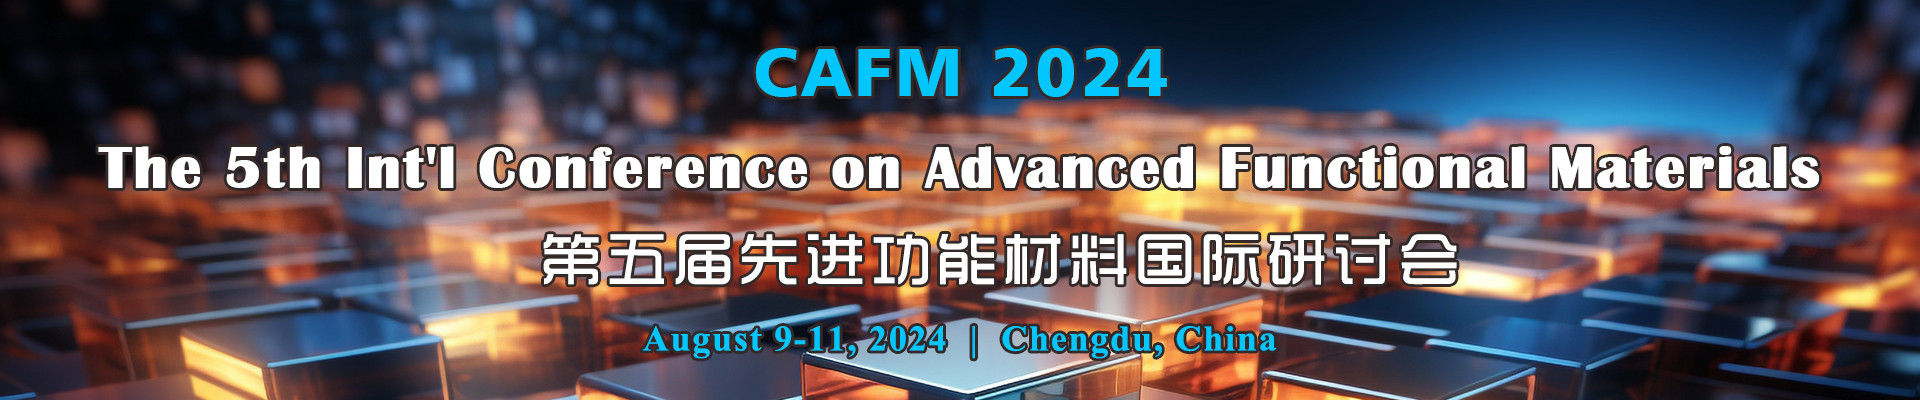 第五届先进功能材料国际研讨会CAFM 2024